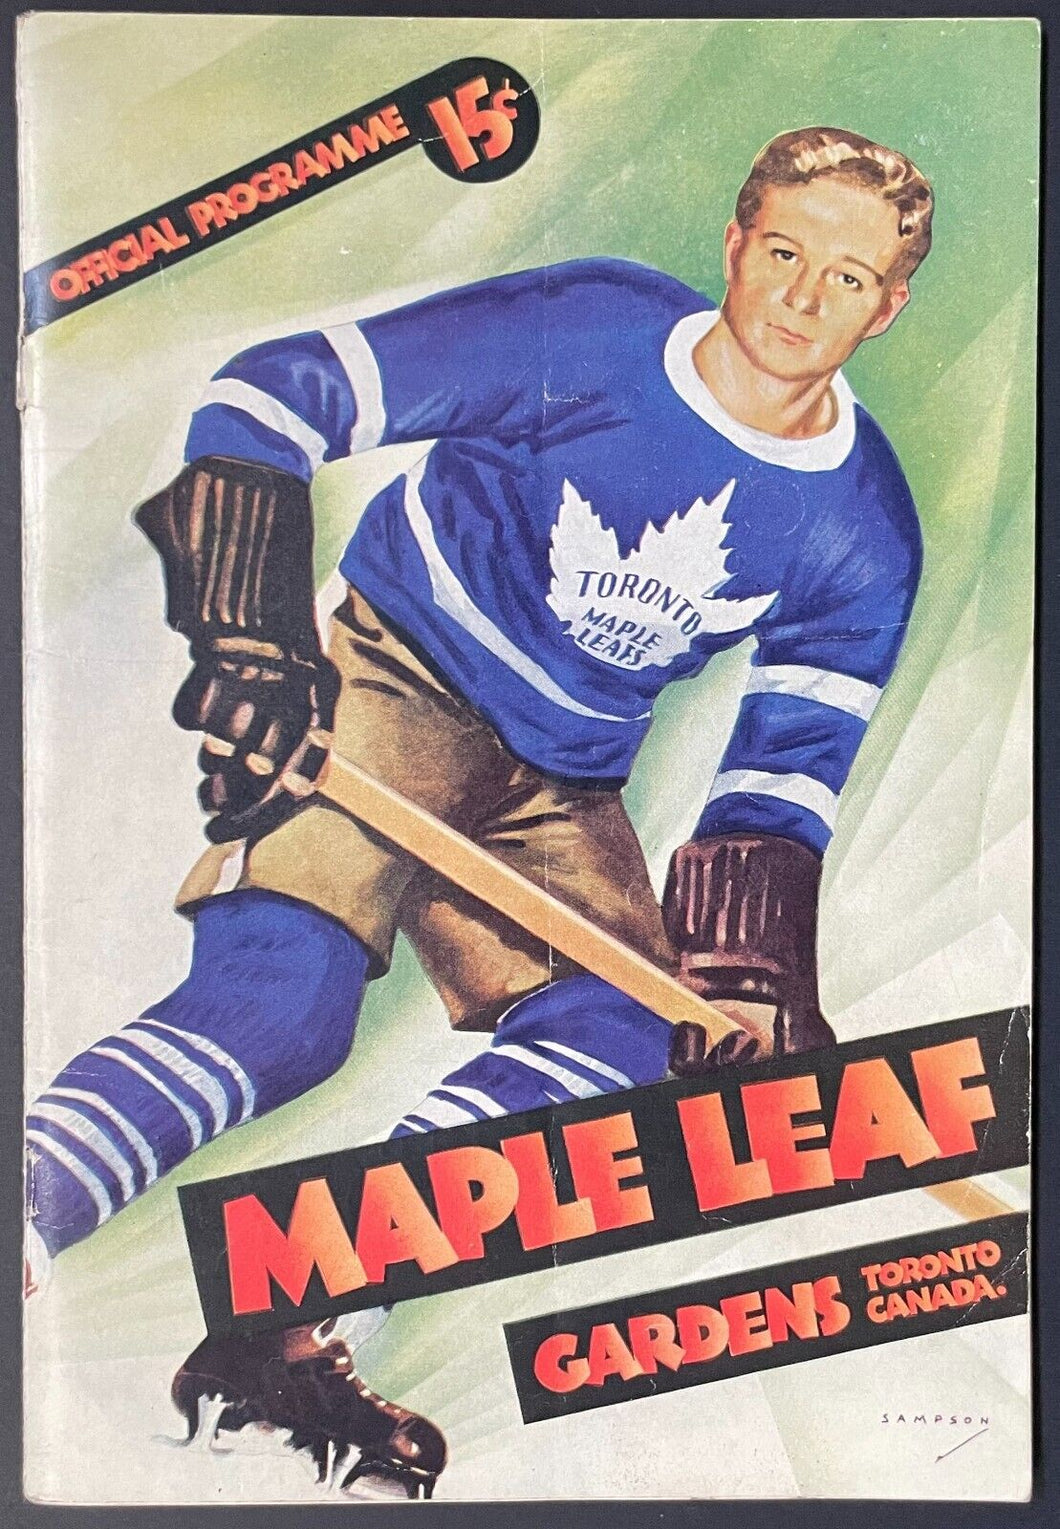 1939 Toronto Maple Leafs Game Program New York Rangers Hockey NHL VTG Syl Apps